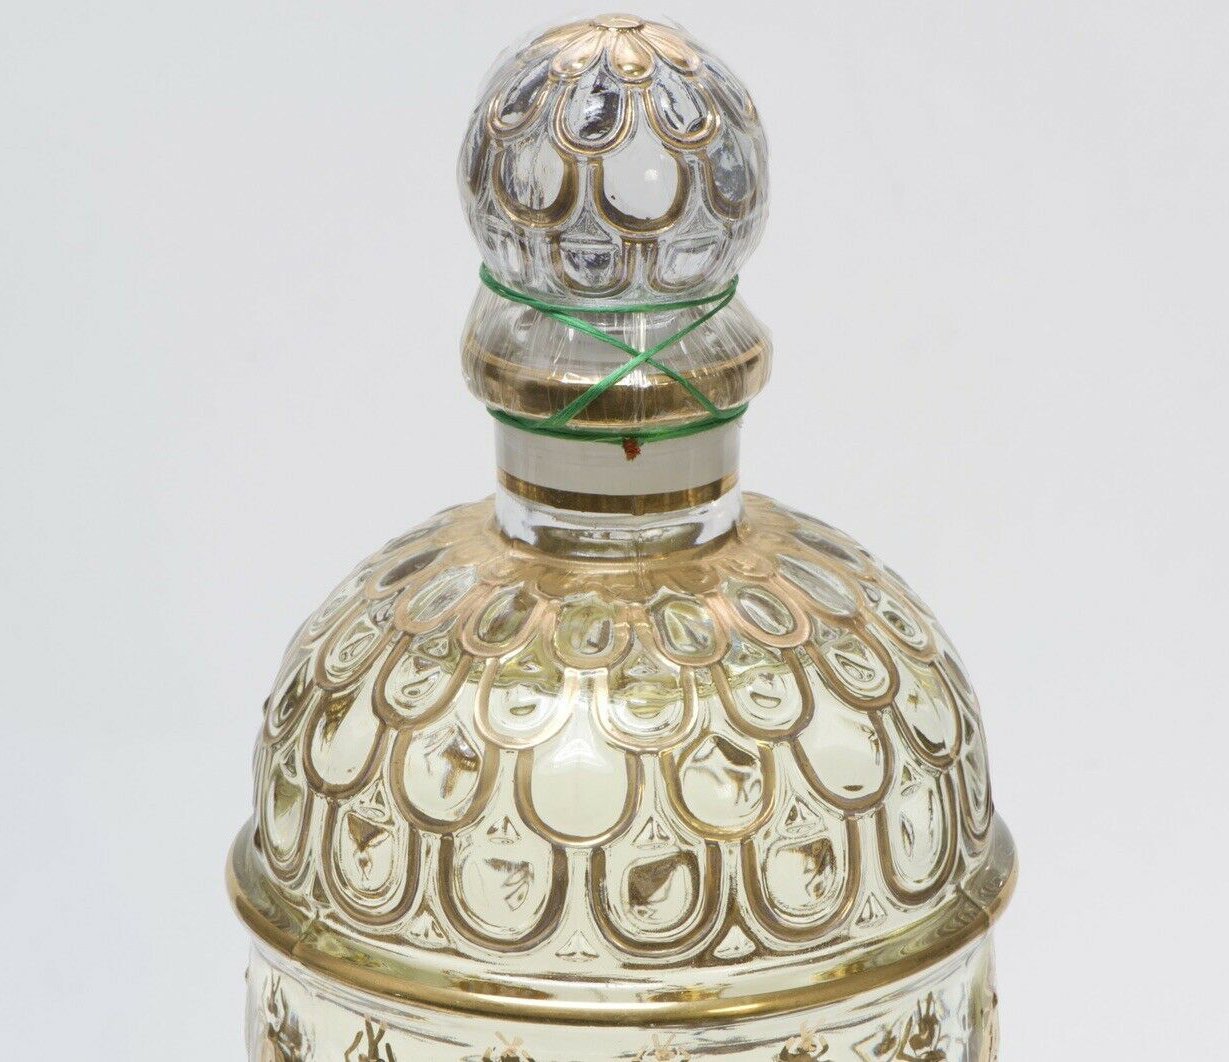 Vintage GUERLAIN Paris Eau de Cologne Imperiale No 713 Perfume 34OZ 1000ML